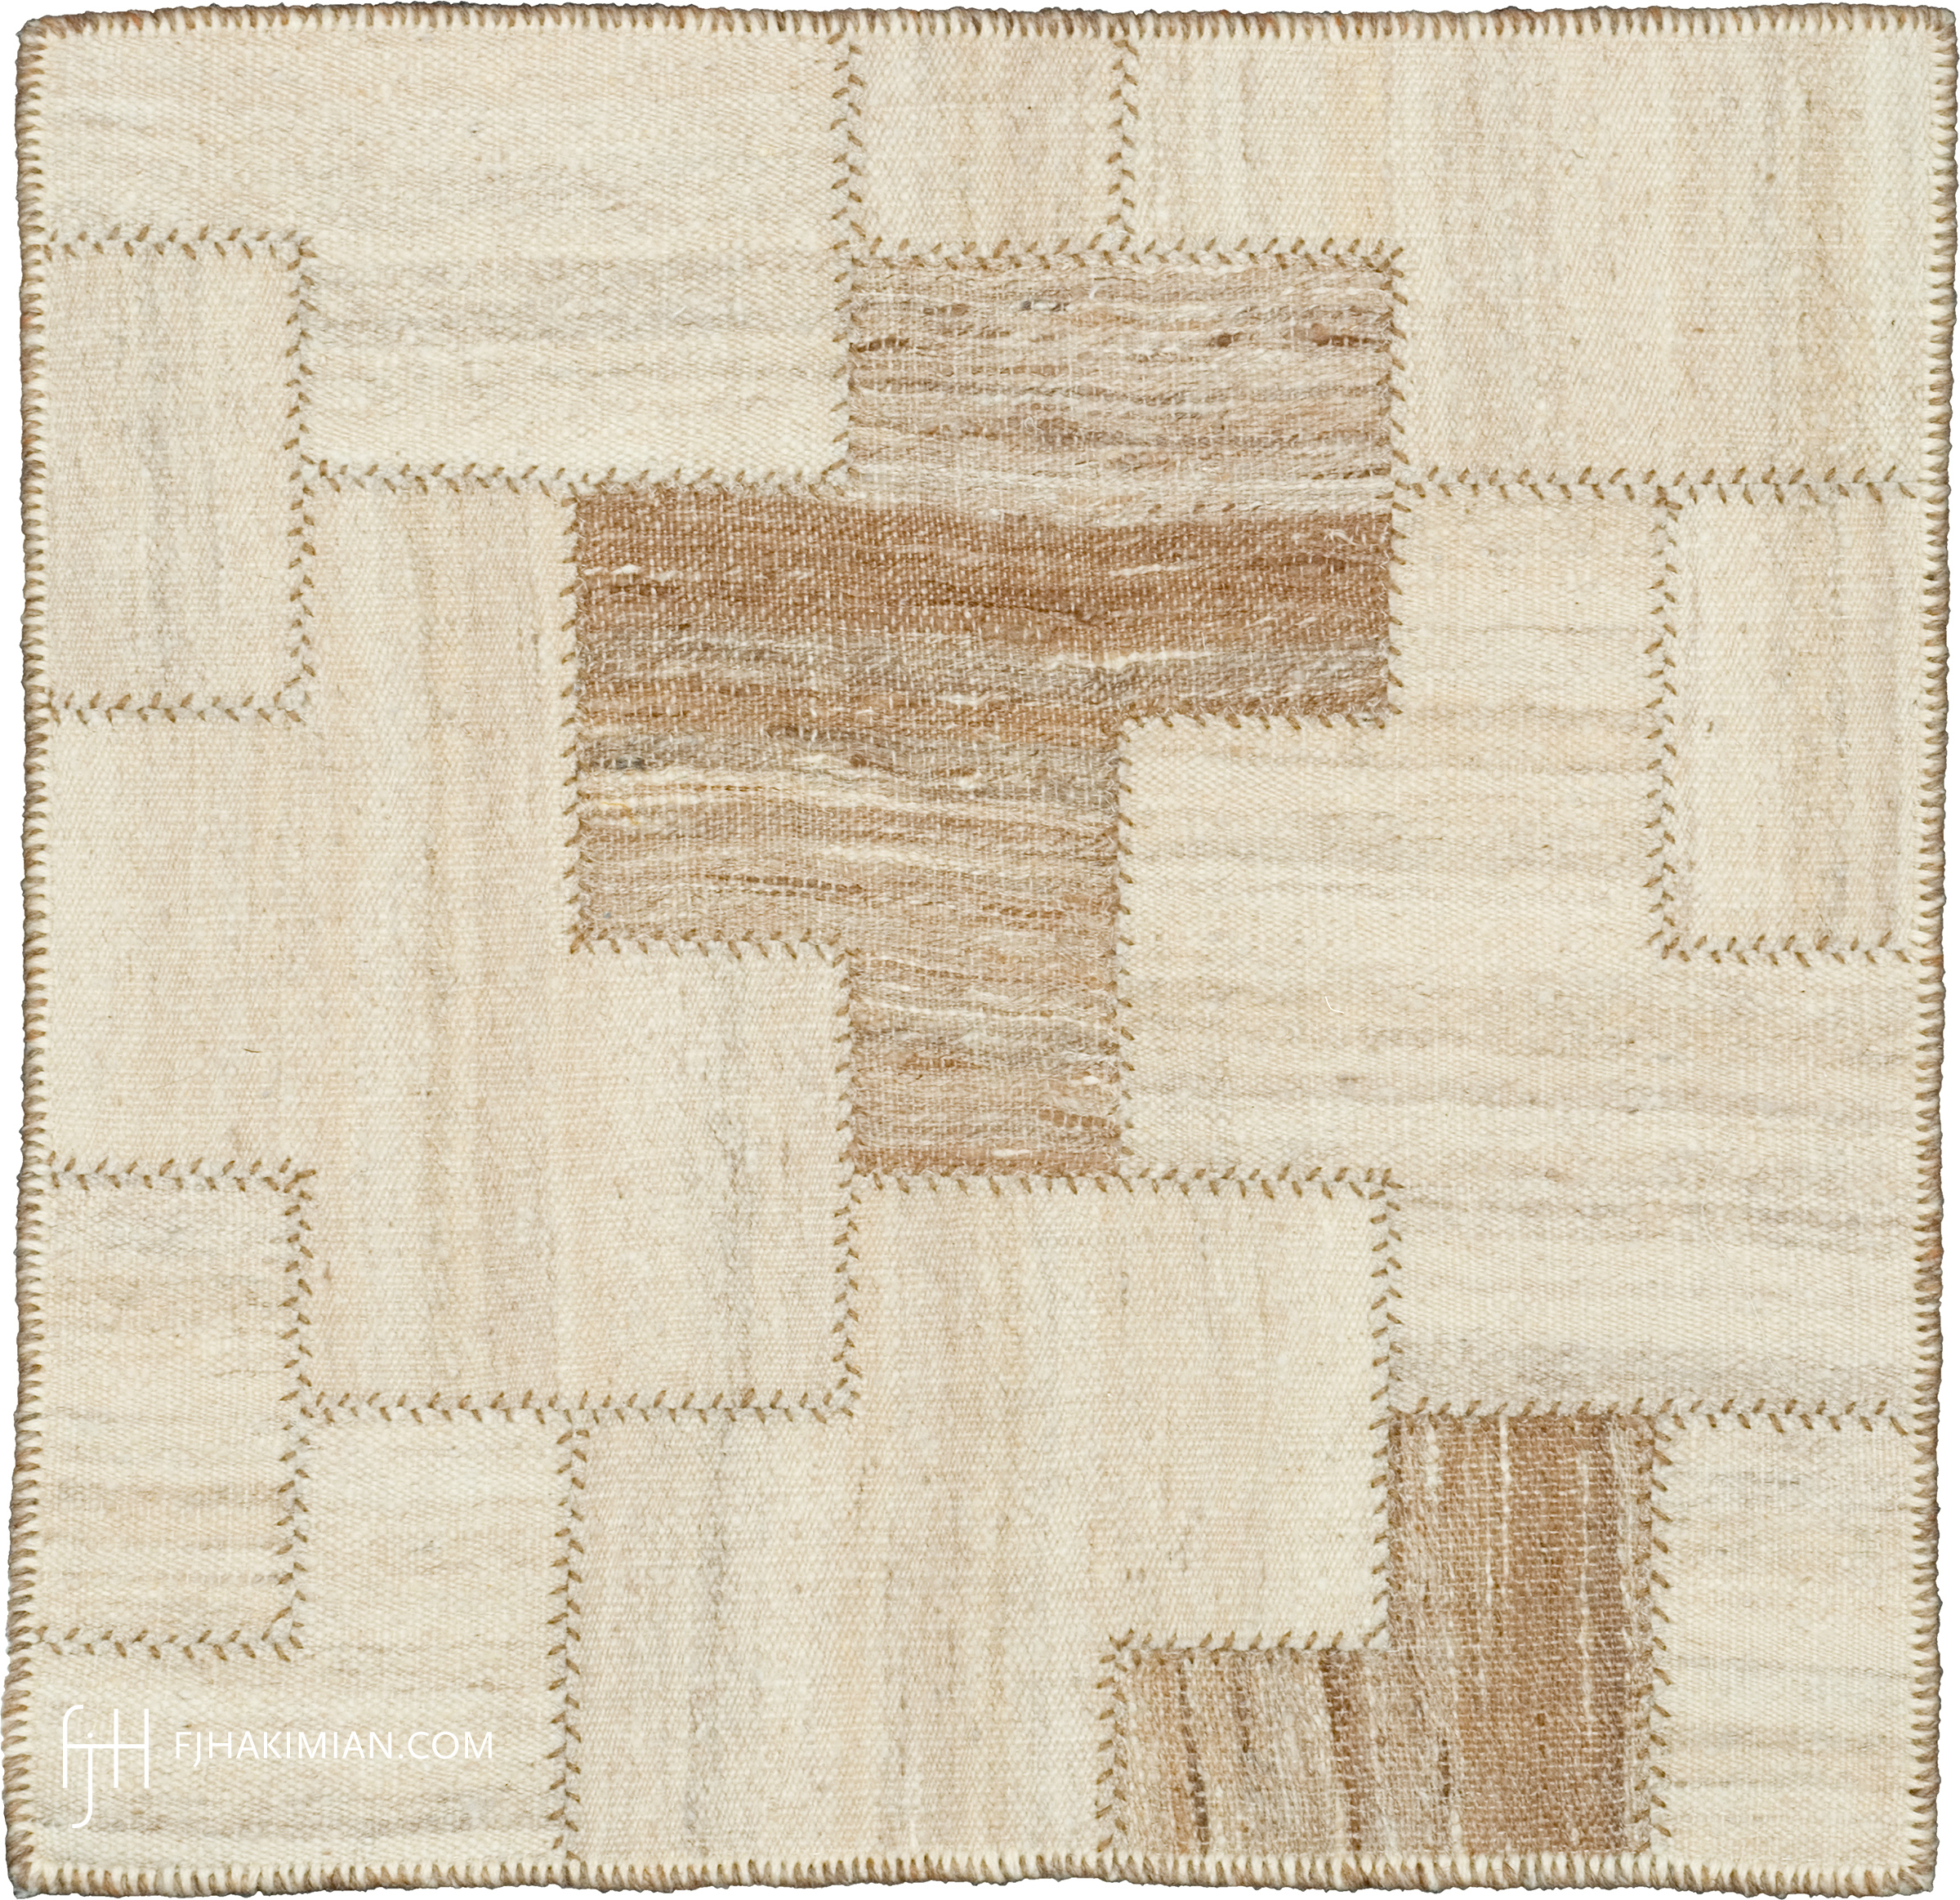 FJ Hakimian | 37591 | Custom Carpet